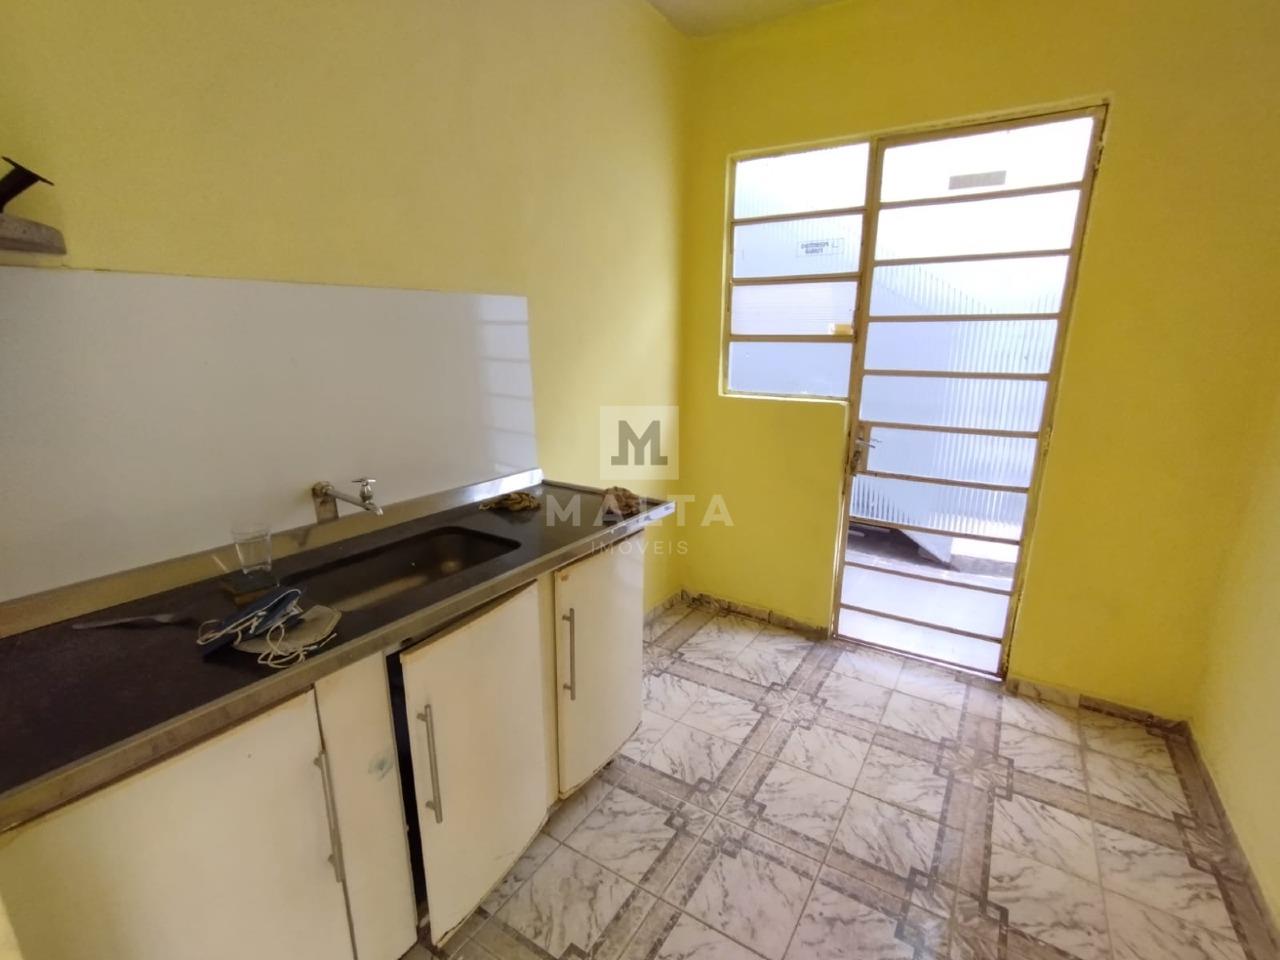 Casa para aluguel no bairro Vale do jatobá de 2 quartos: 